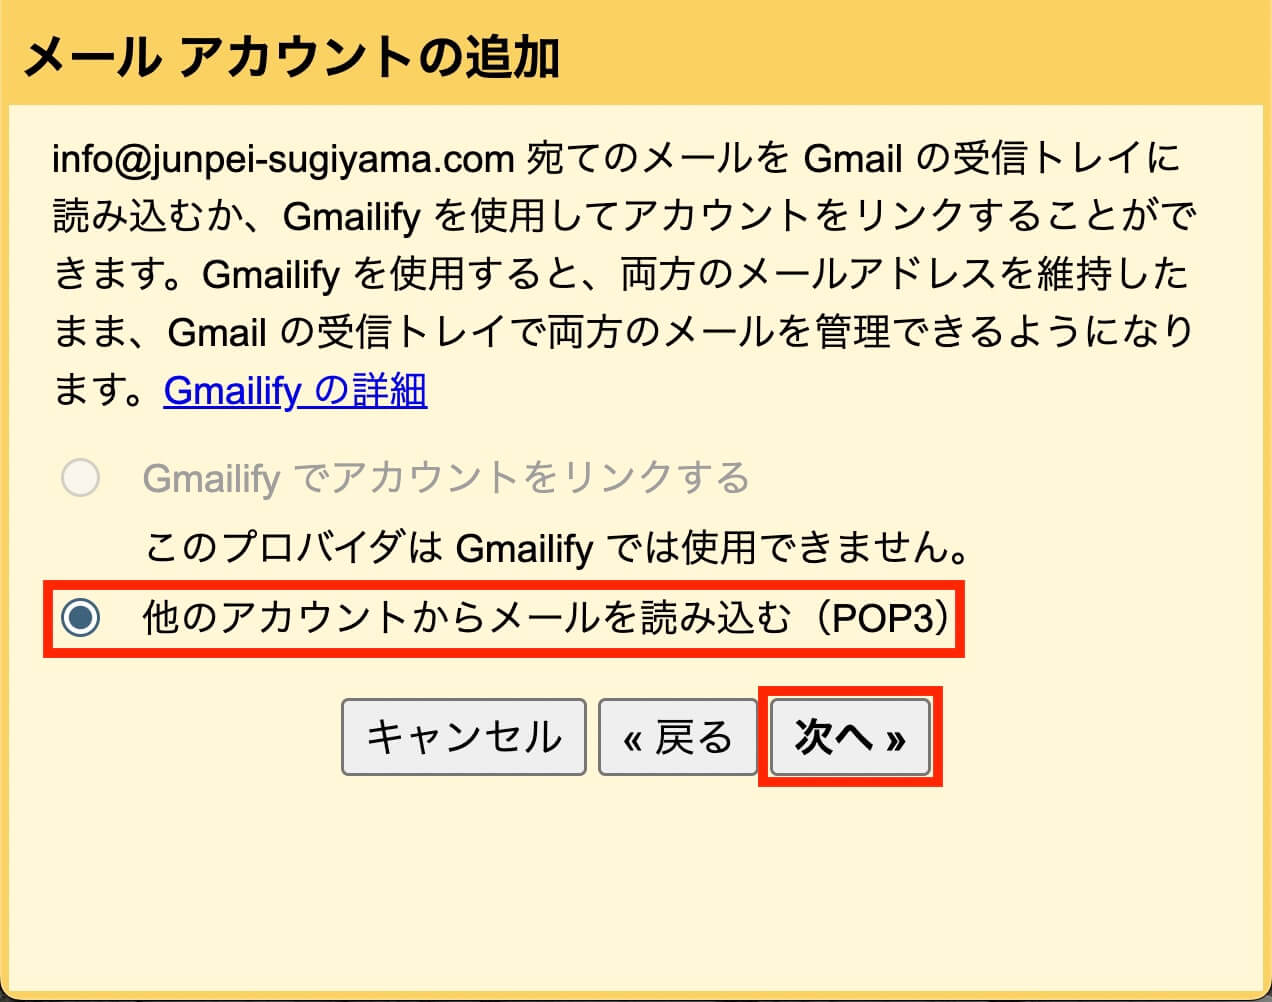 Gmailメールアカウントの追加：他のアカウントからメールを読み込む（POP3）を選択